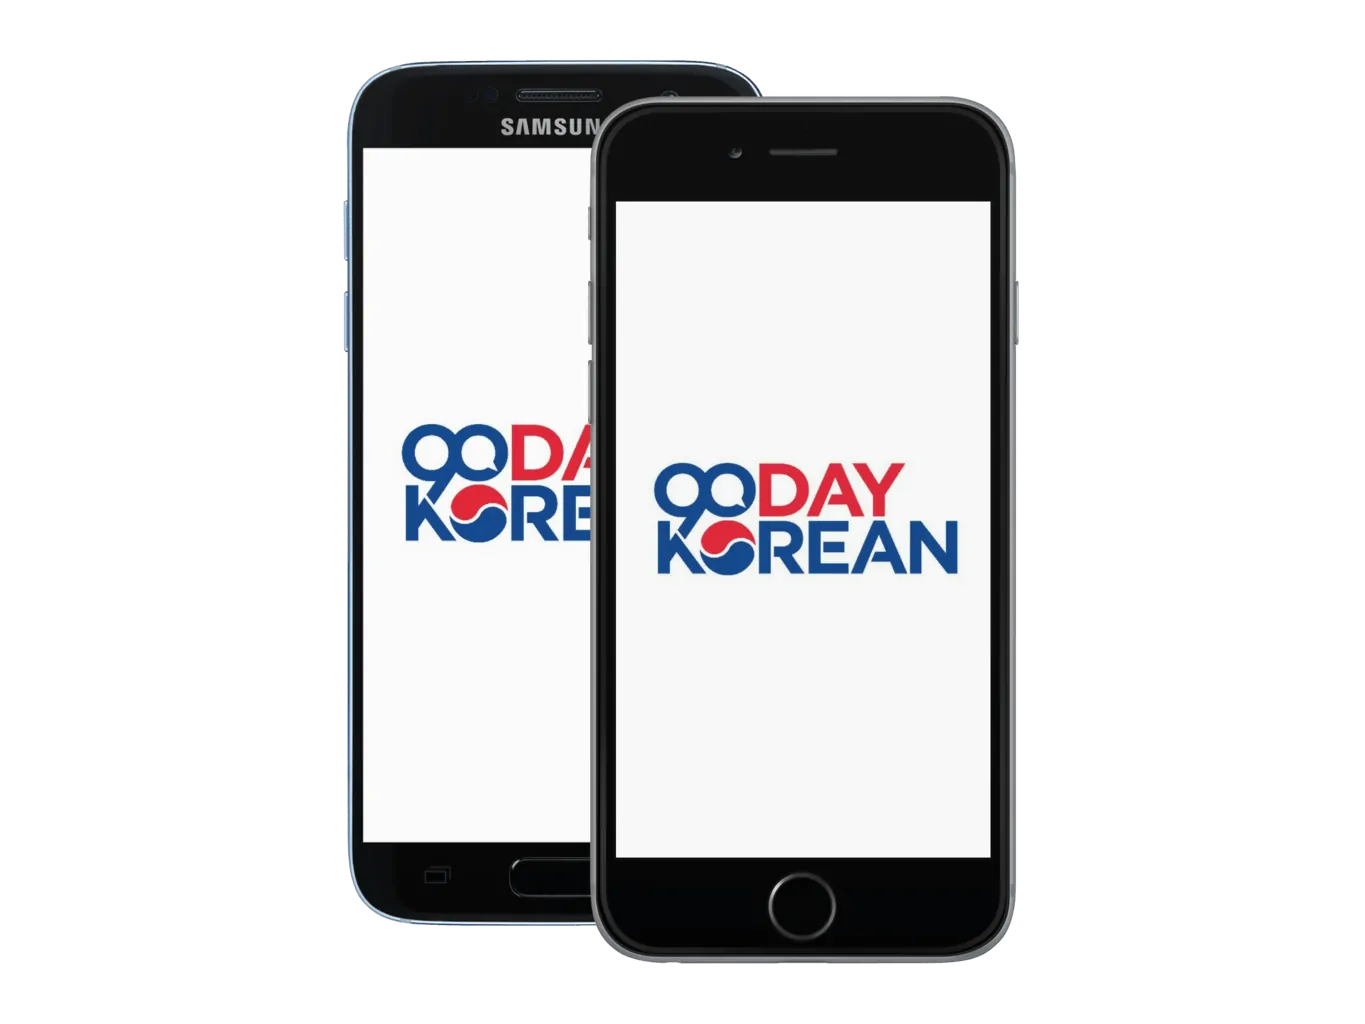 90 Day Korean App